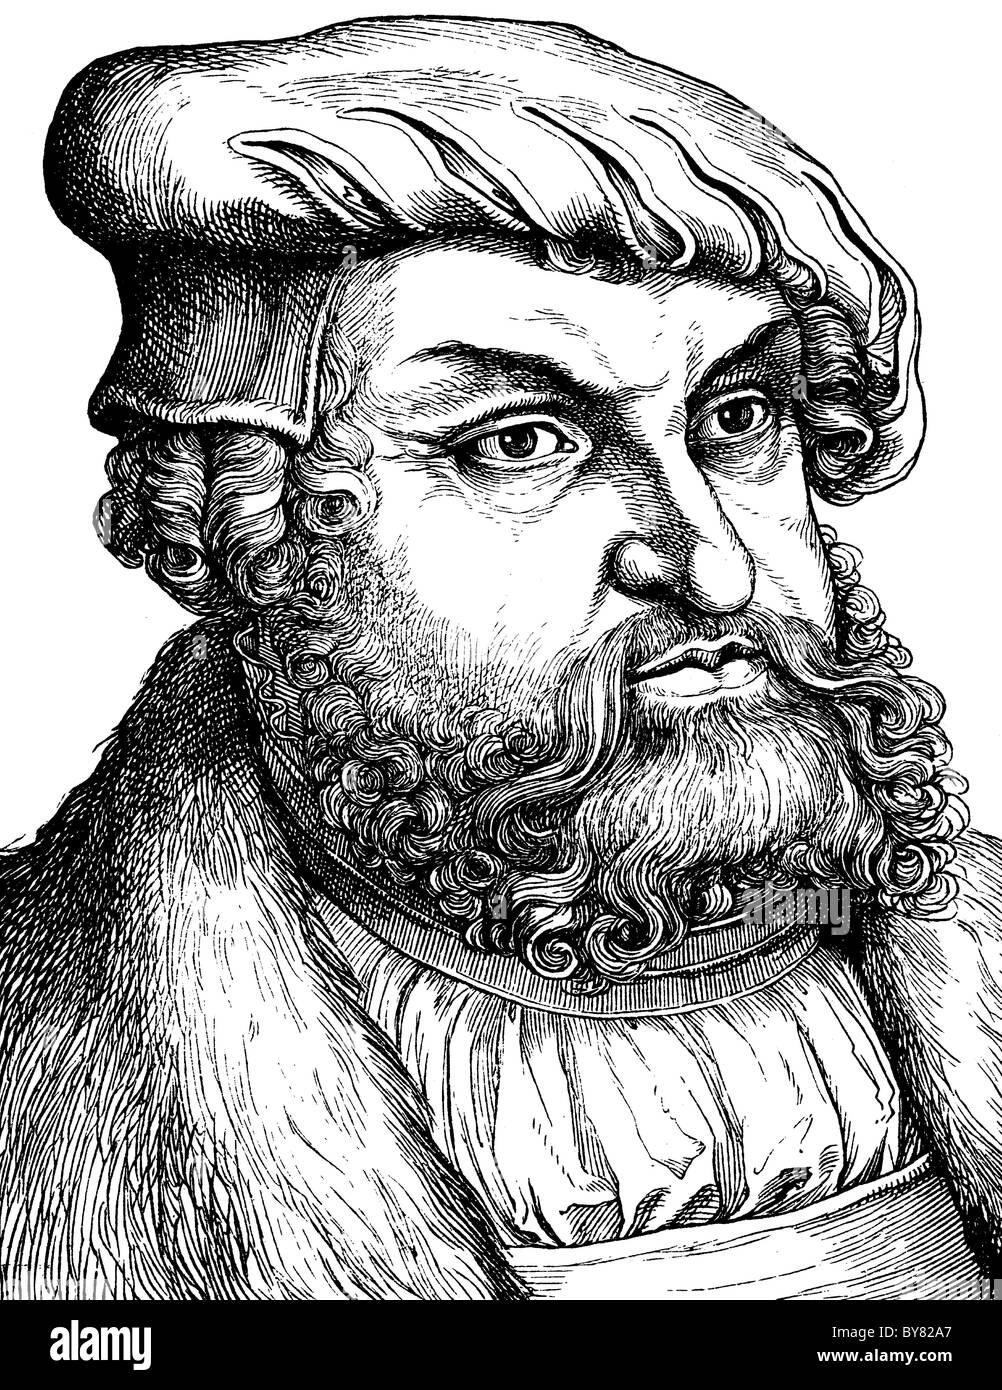 Imagen digital remasterizada de Johann, Herzog und Kurfürst zu Sachsen, der Beständige, 1468-1532 Foto de stock